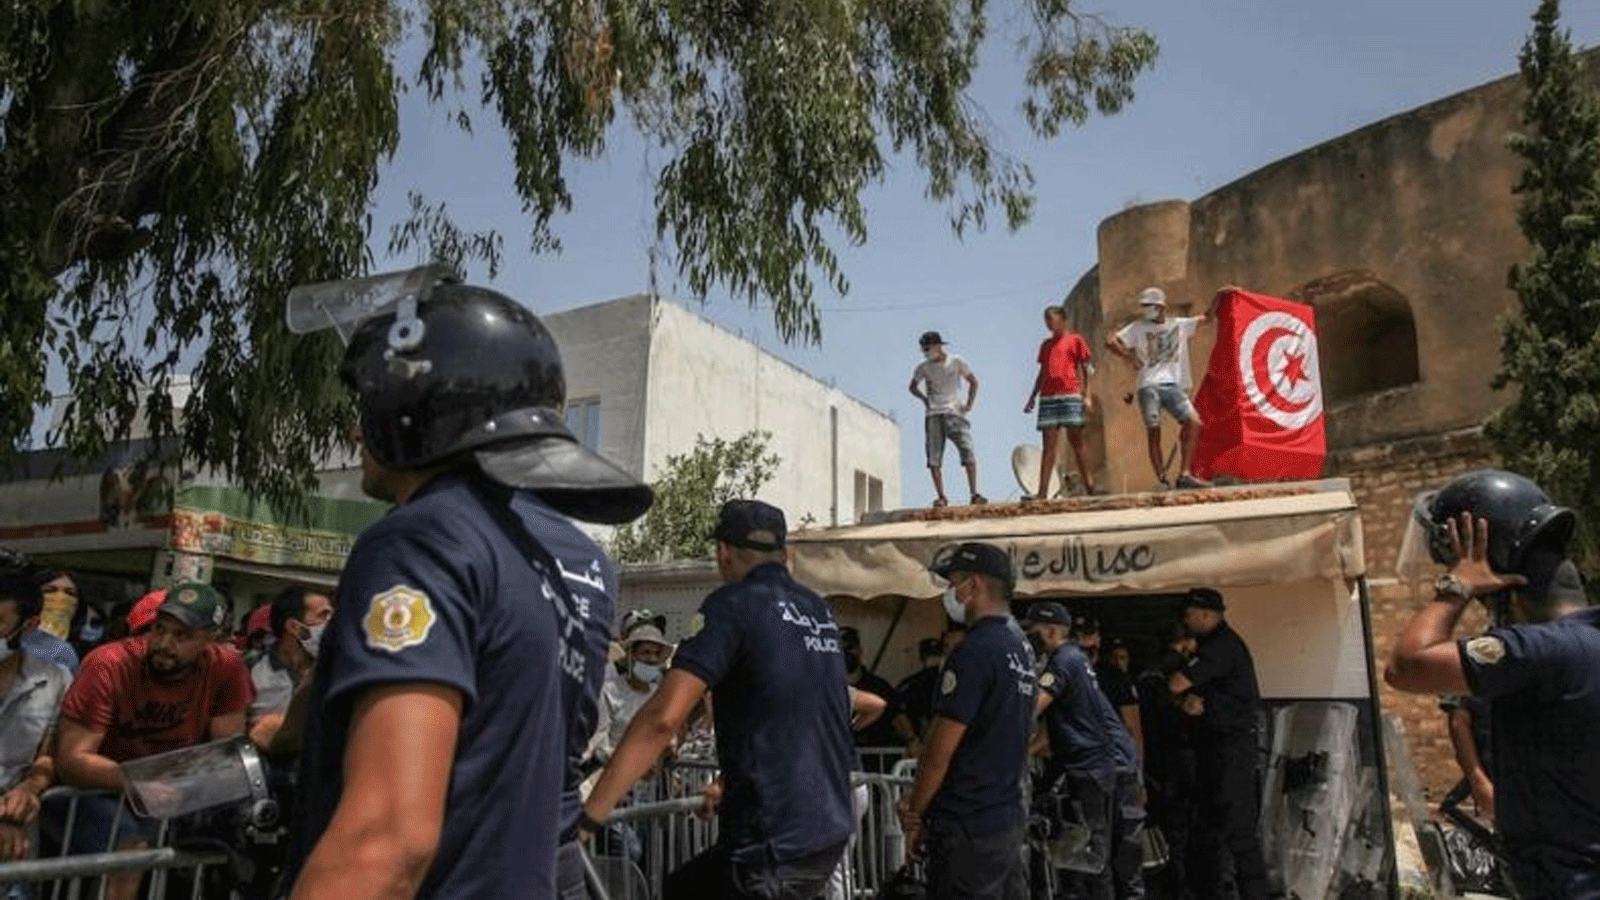 أنصار قيس سعيّد يرفعون العلم التونسي على سطح متجر أمام شرطة مكافحة الشغب، خلال مظاهرة أقيمت أمام مبنى البرلمان التونسي في باردو ، بالعاصمة تونس. بتاريخ 26 تموز/ يوليو 2021.